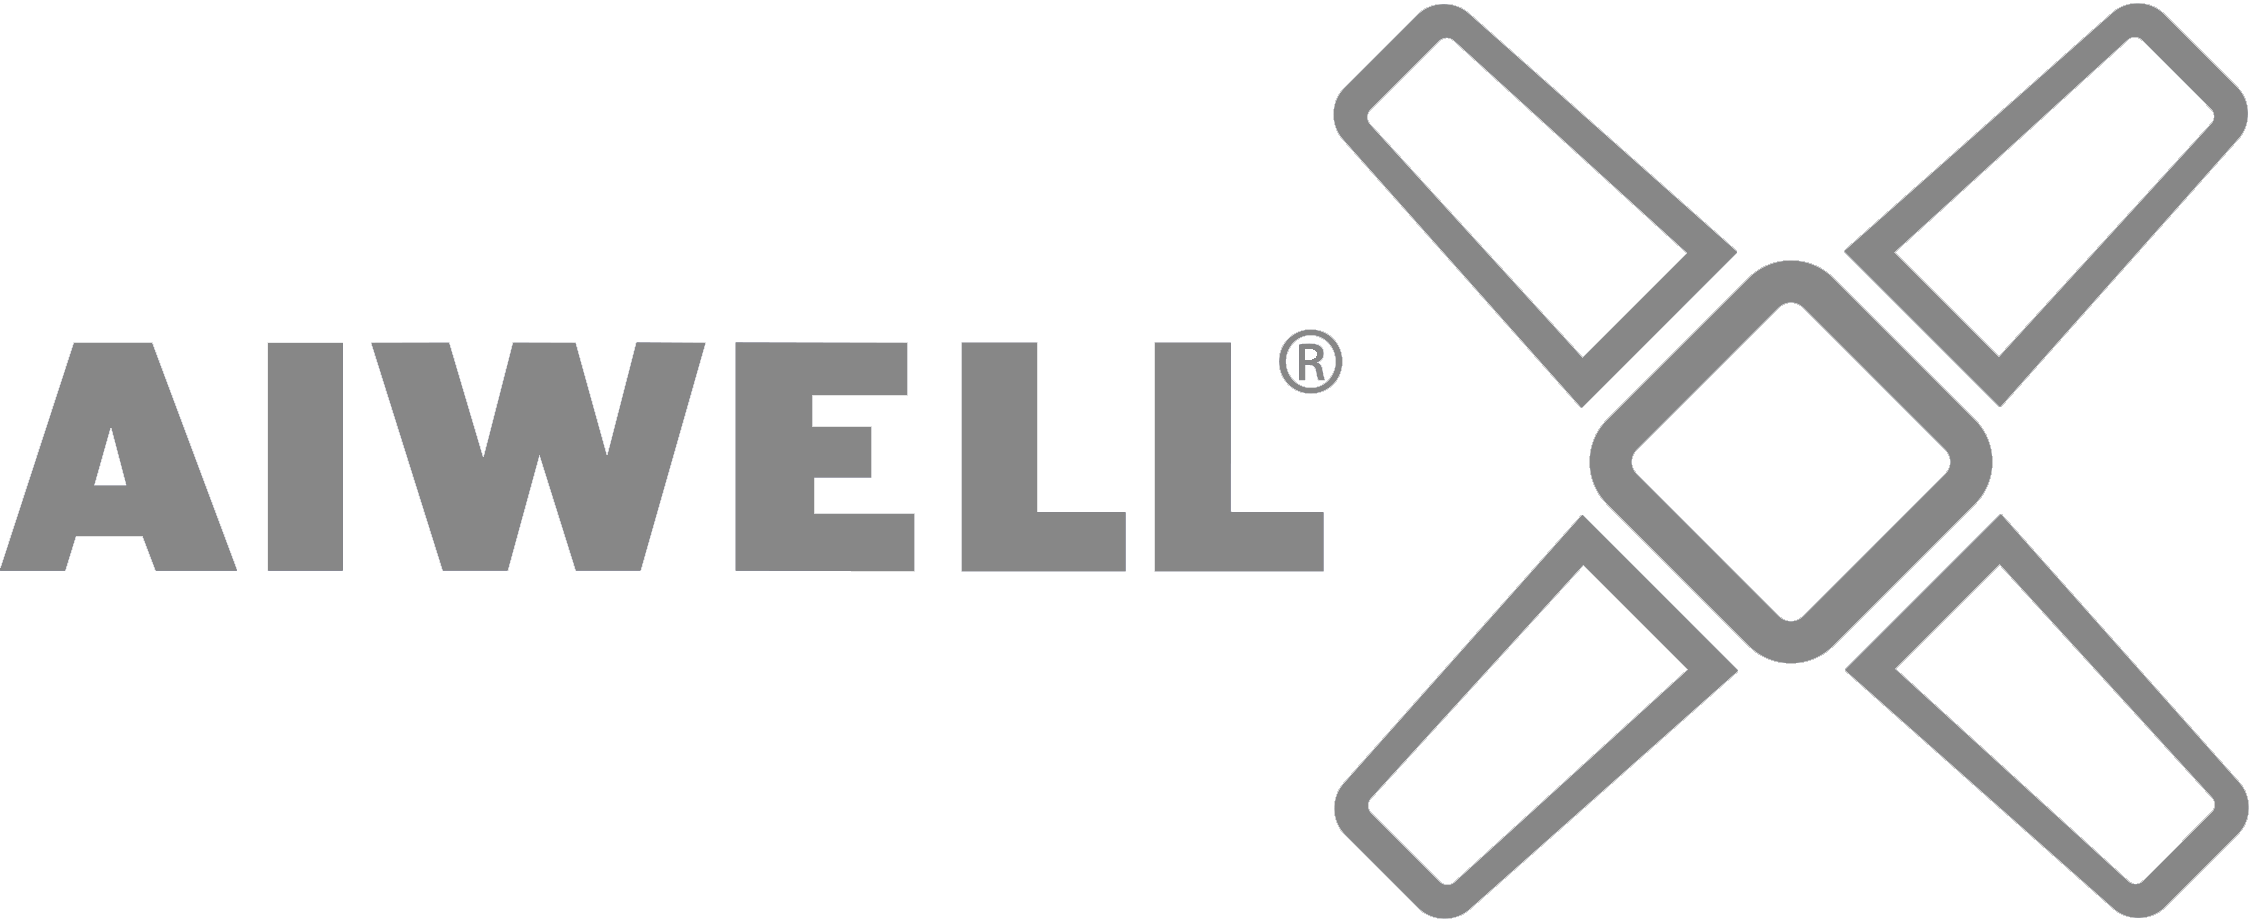 Aiwell-logo_grey